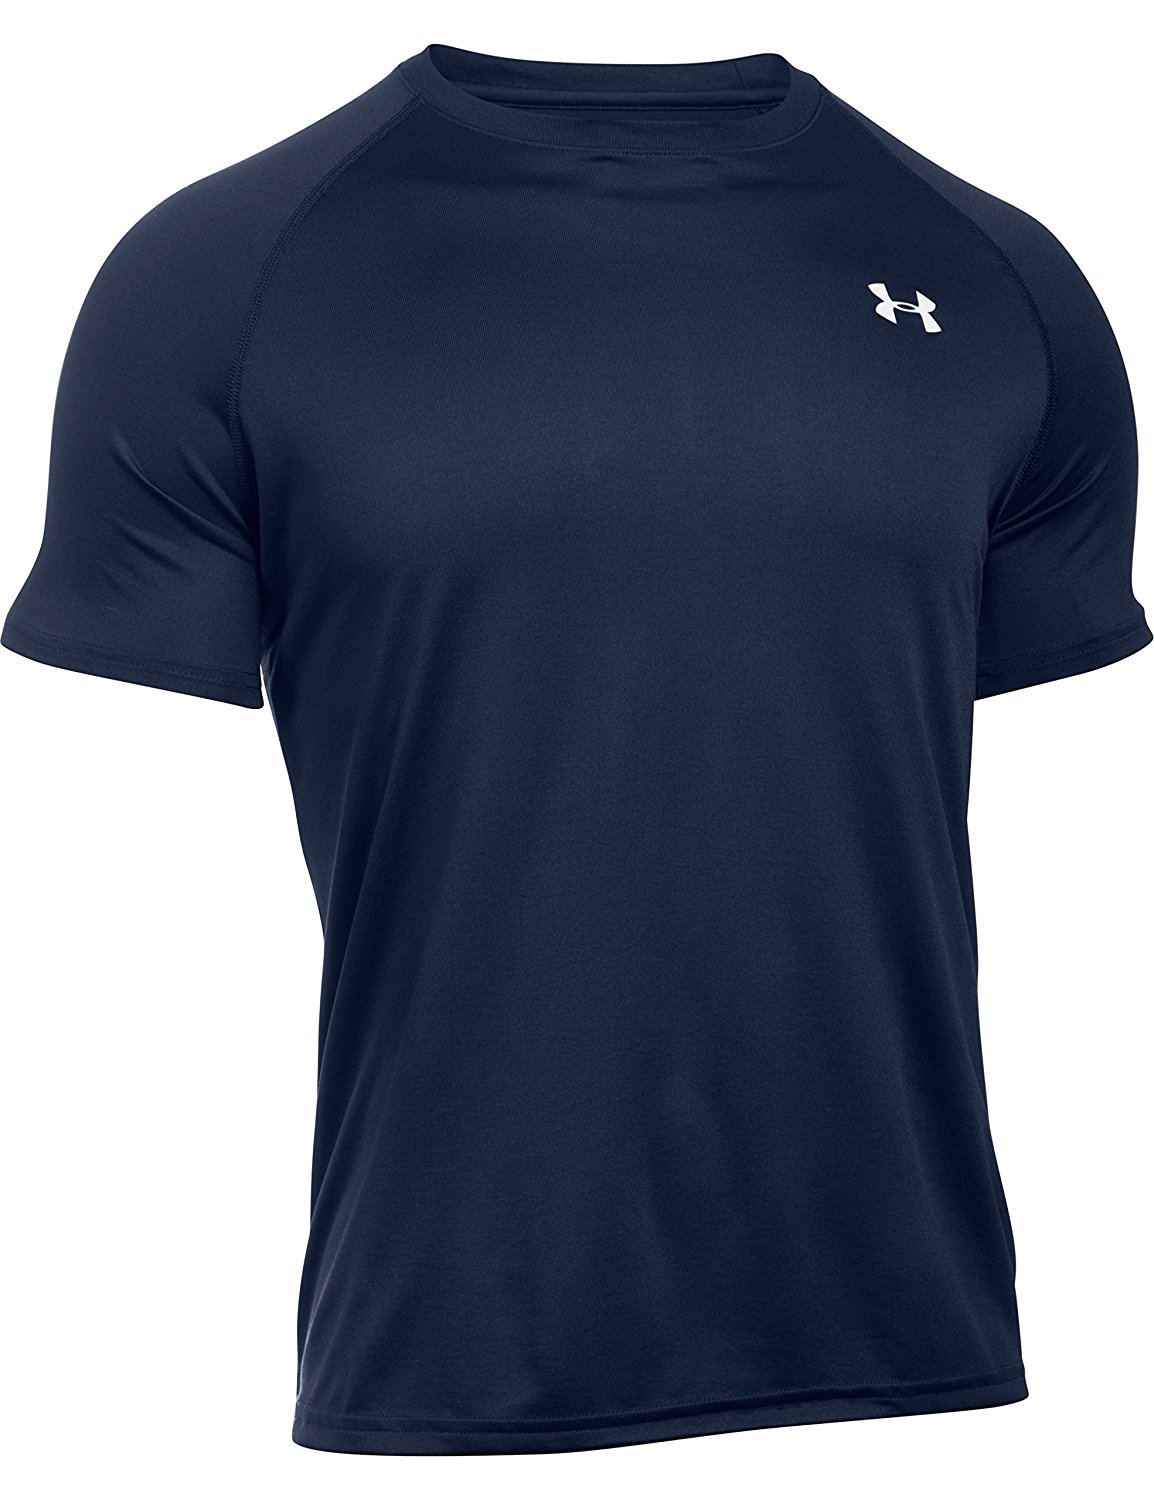 Under Armour Men's Tech Short Sleeve T-Shirt $14.98